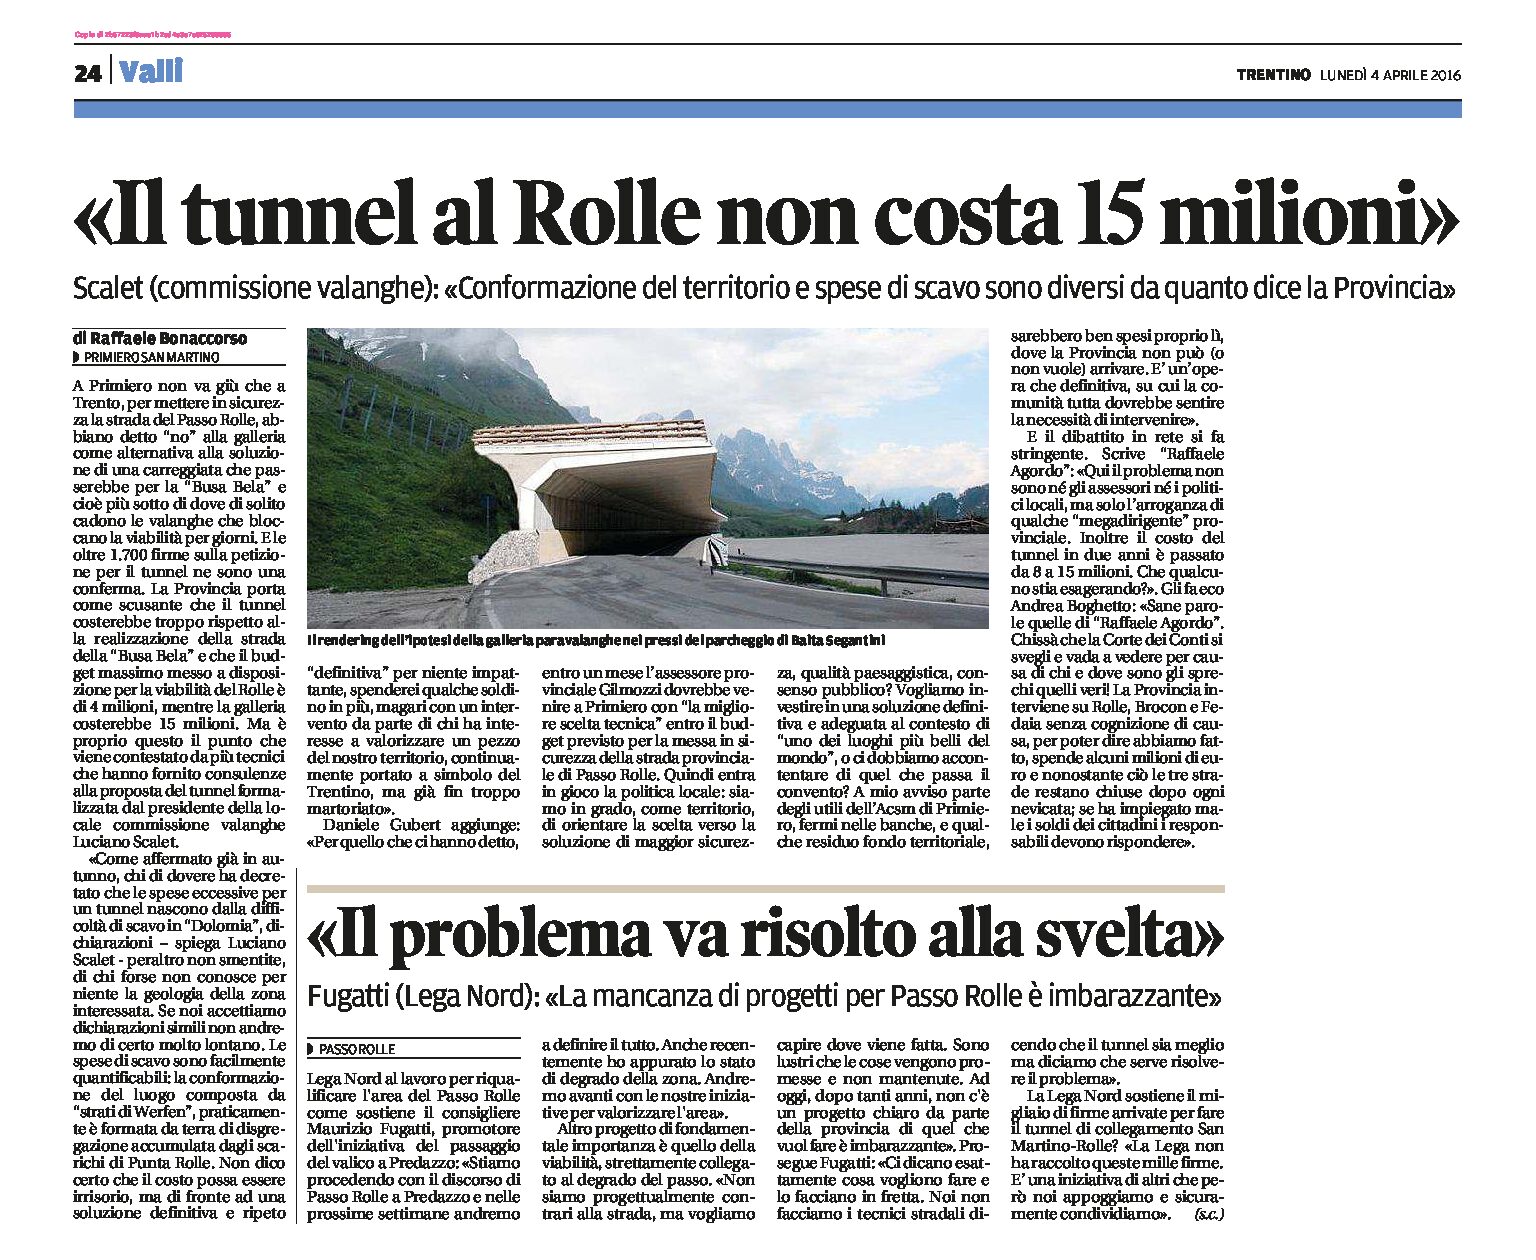 Passo Rolle: Il tunnel non costa 15 milioni